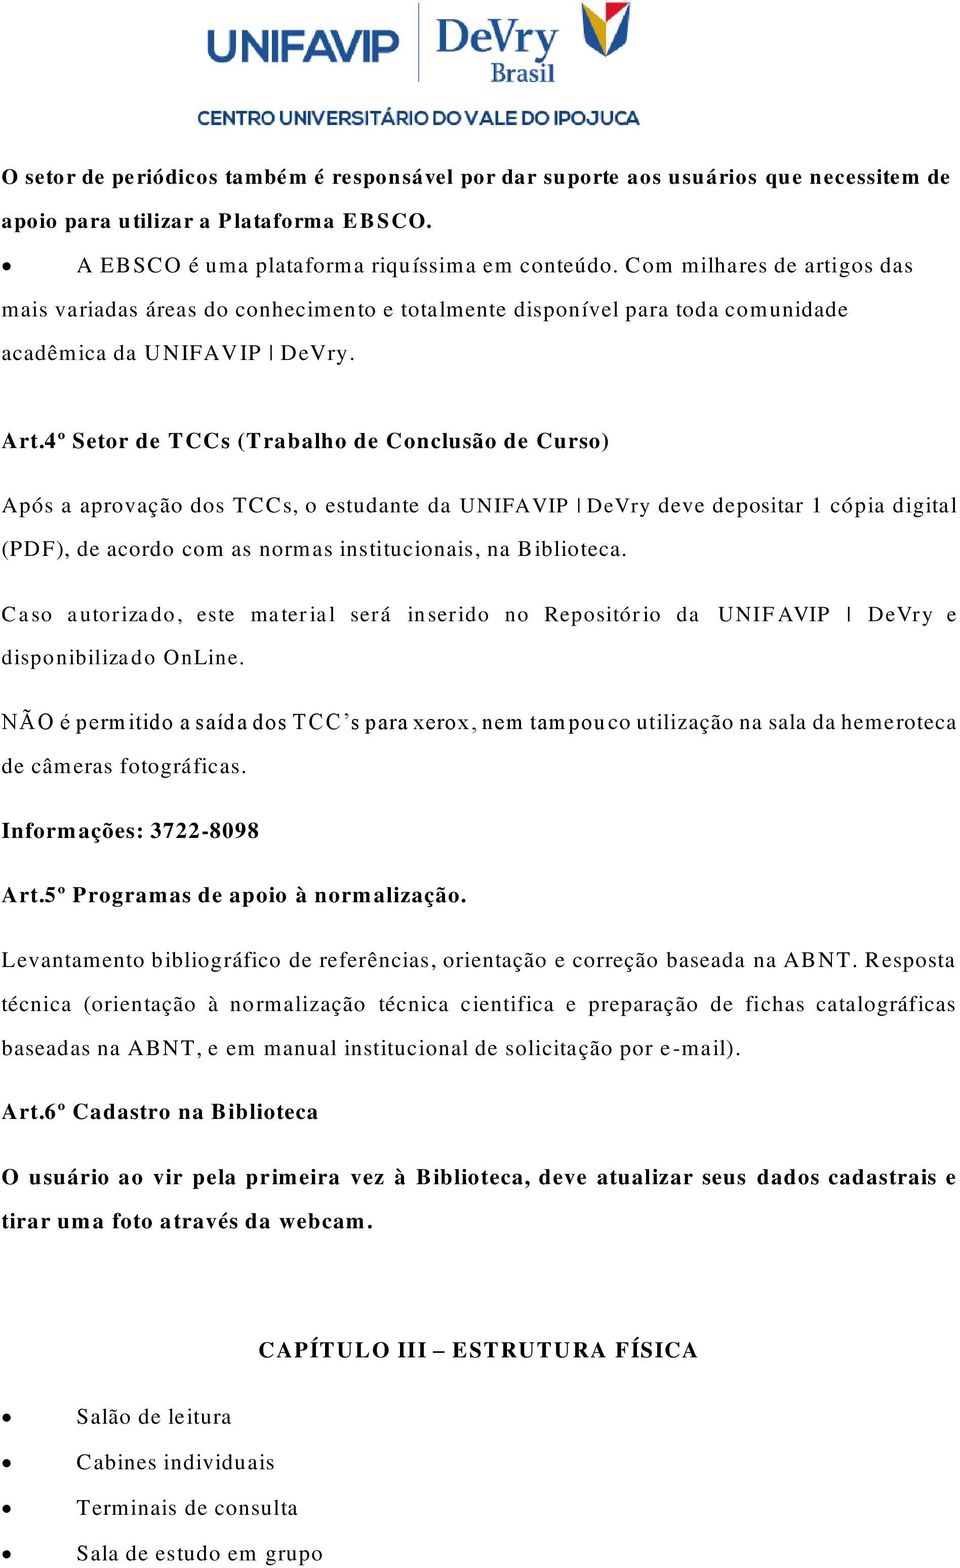 4º Setor de TCCs (Trabalho de Conclusão de Curso) Após a aprovação dos TCCs, o estudante da UNIFAVIP DeVry deve depositar 1 cópia digital (PDF), de acordo com as normas institucionais, na Biblioteca.